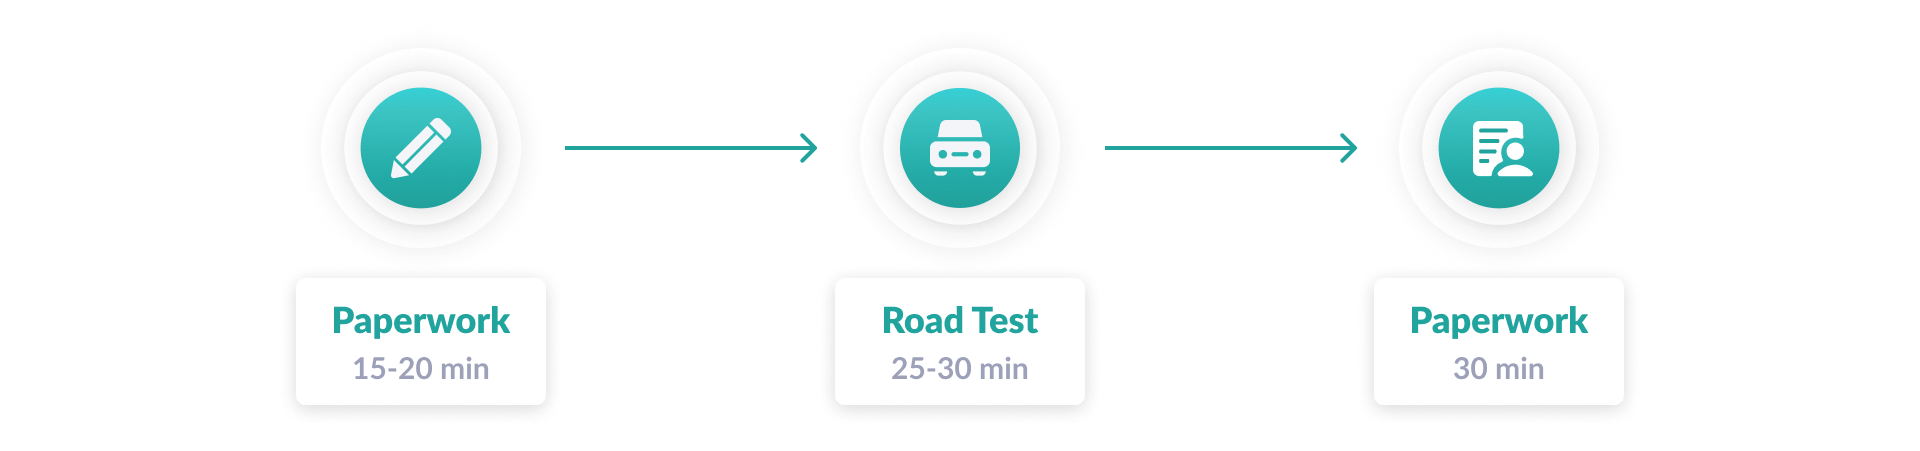 DMV road test timeline